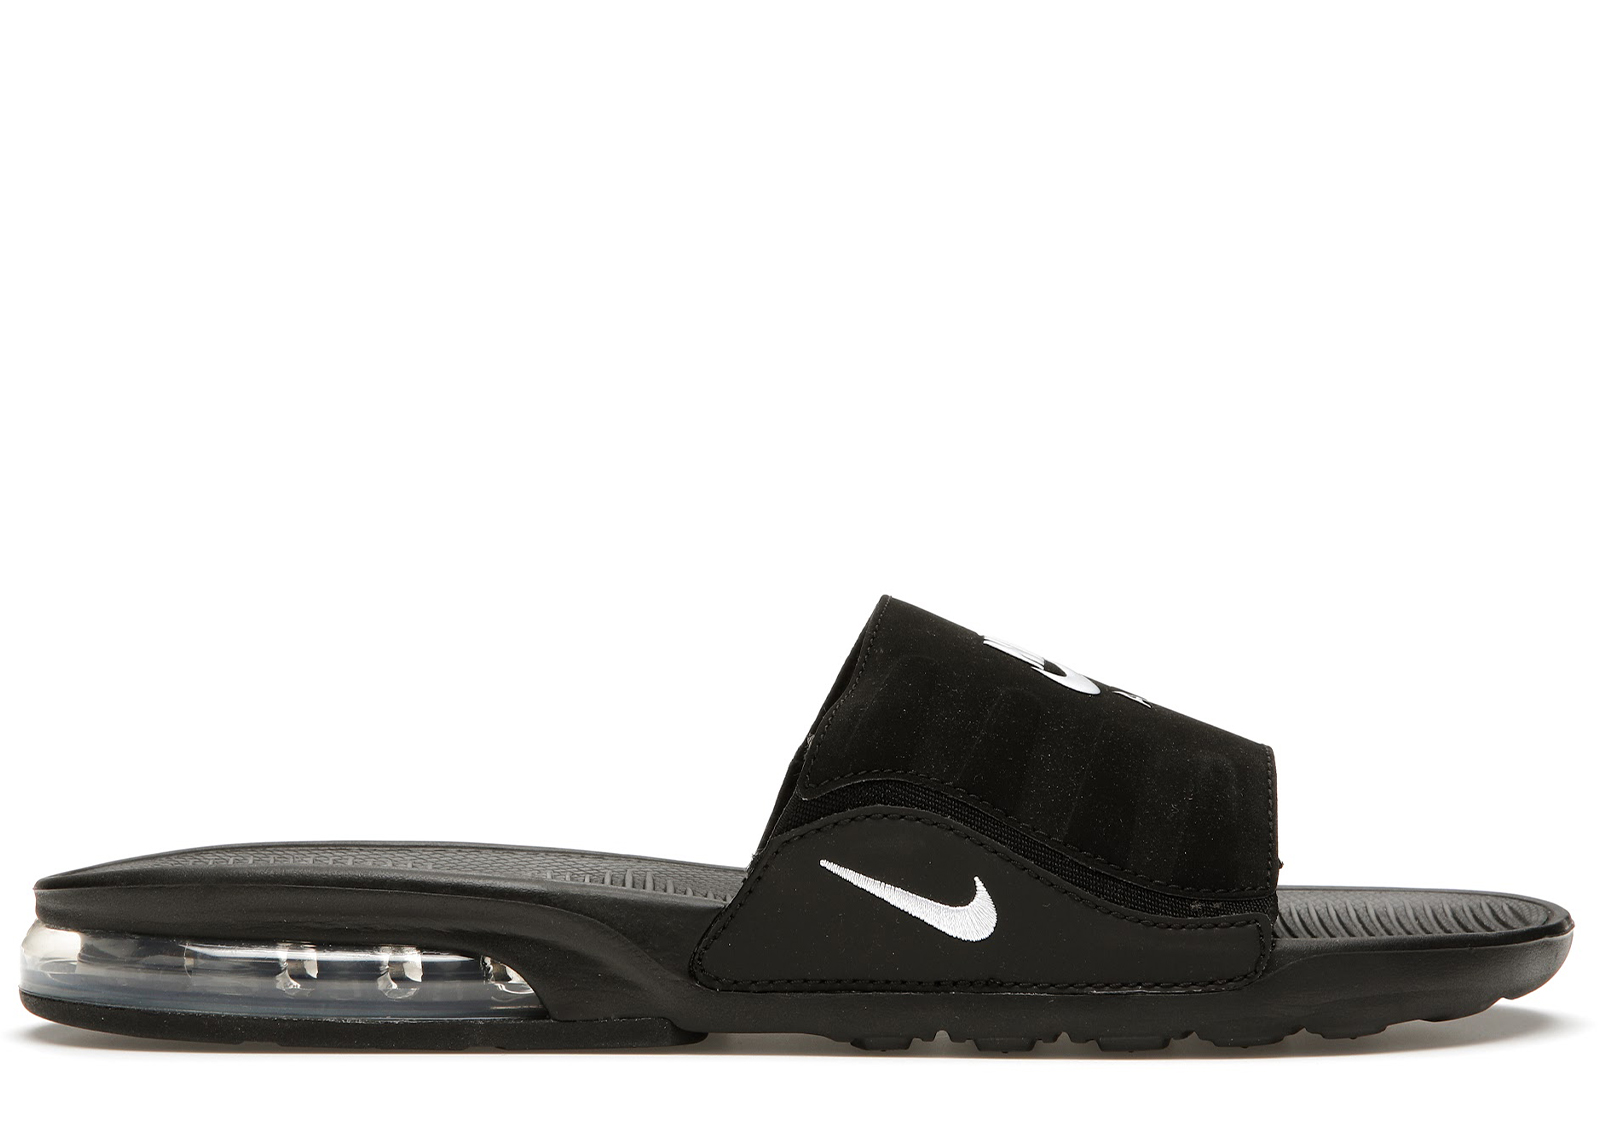 Nike Air Max Camden Slide Black White Men's - BQ4626-003 - US